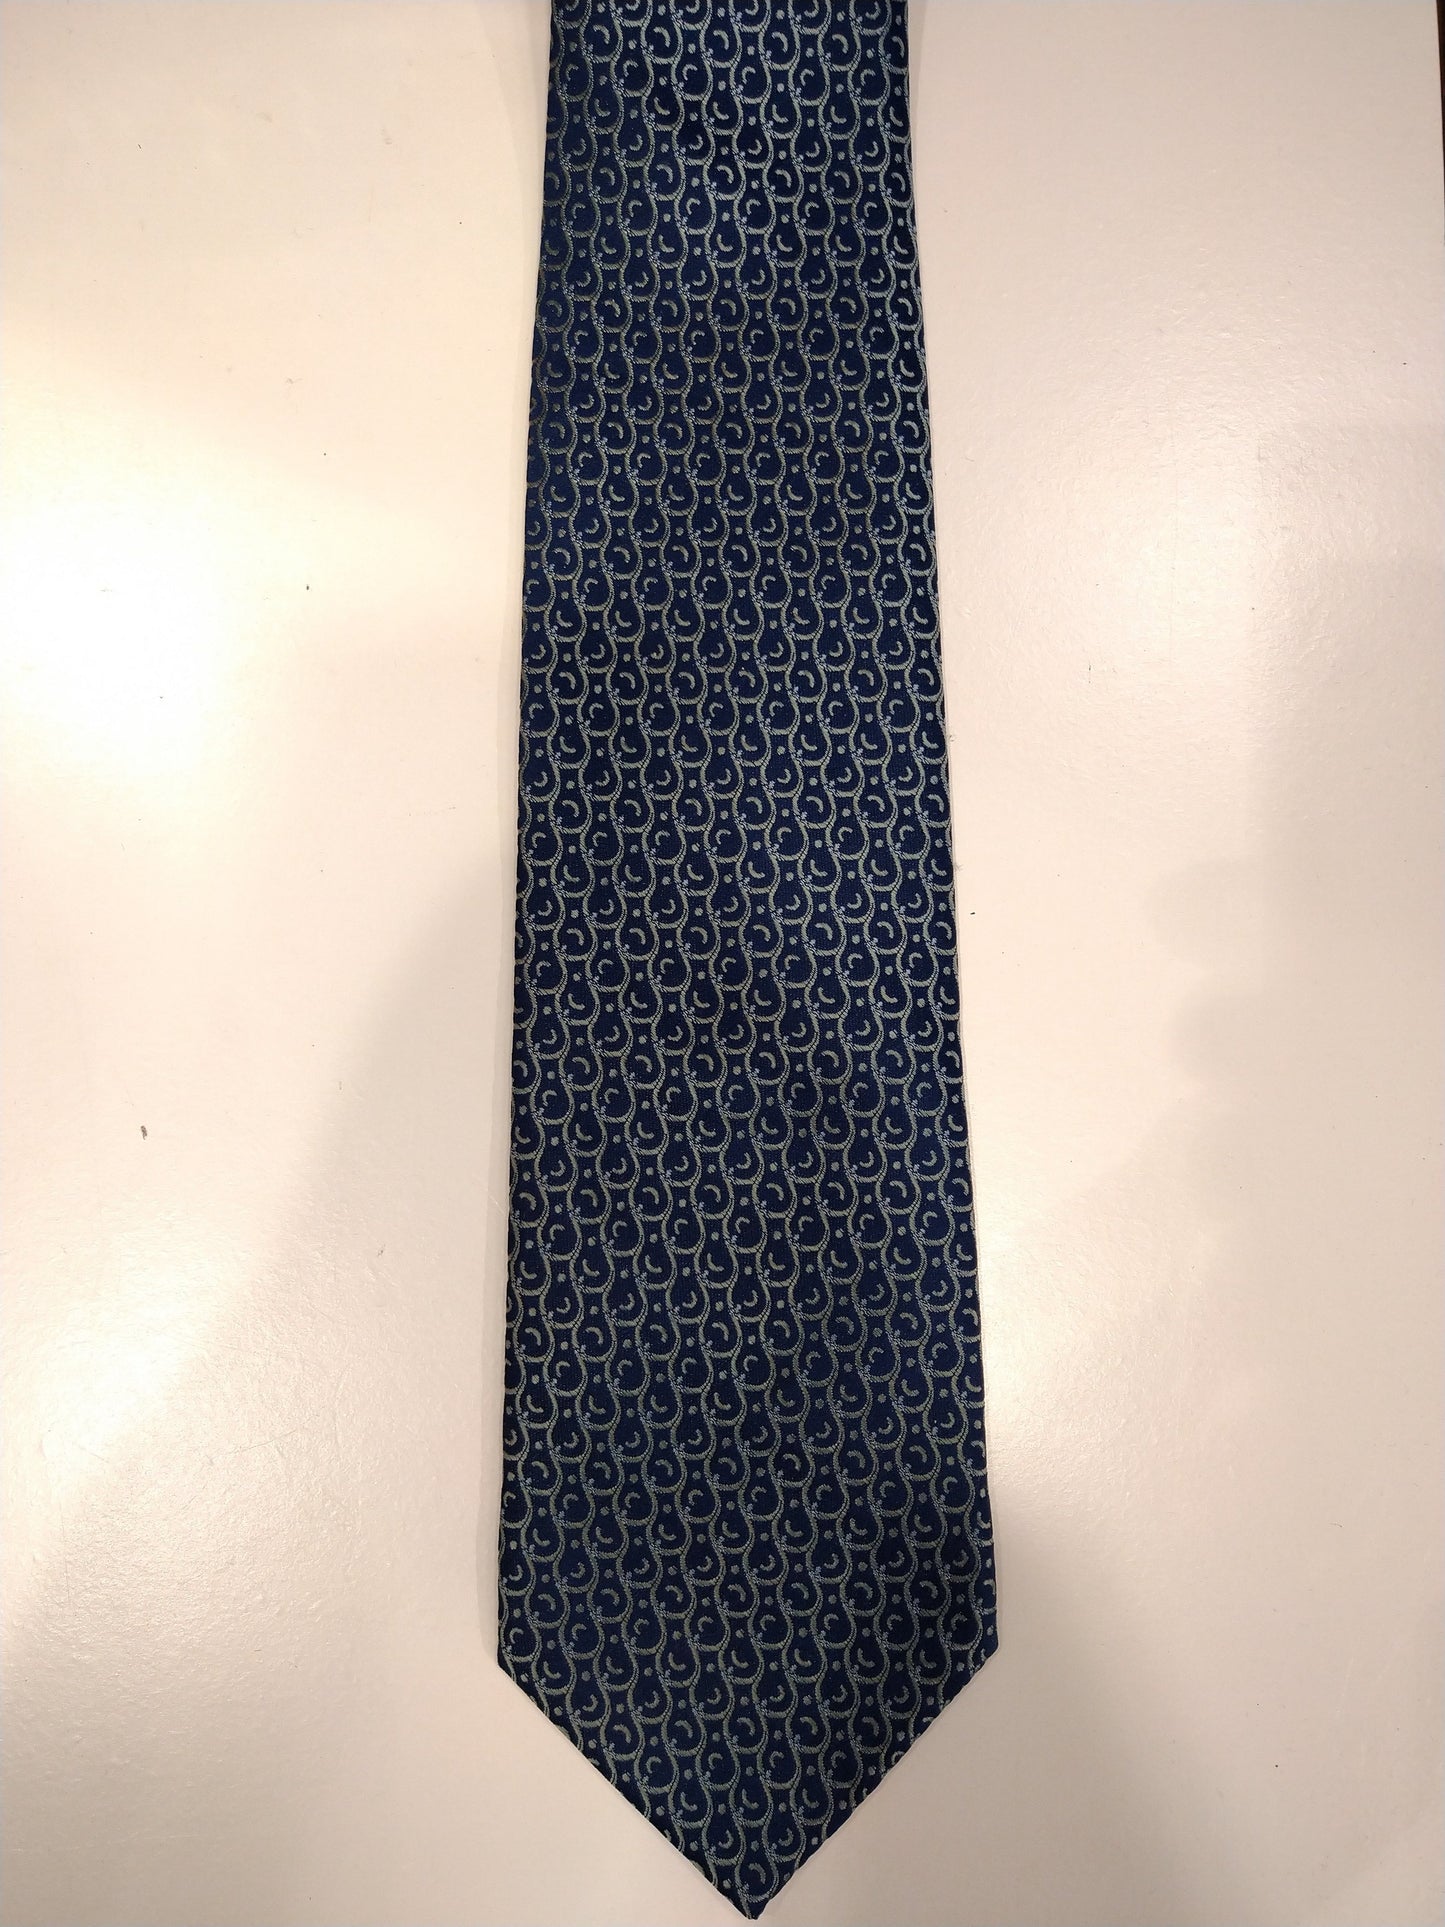 Vintage Rodos Silks hand made zijde stropdas. Blauw geel motief.